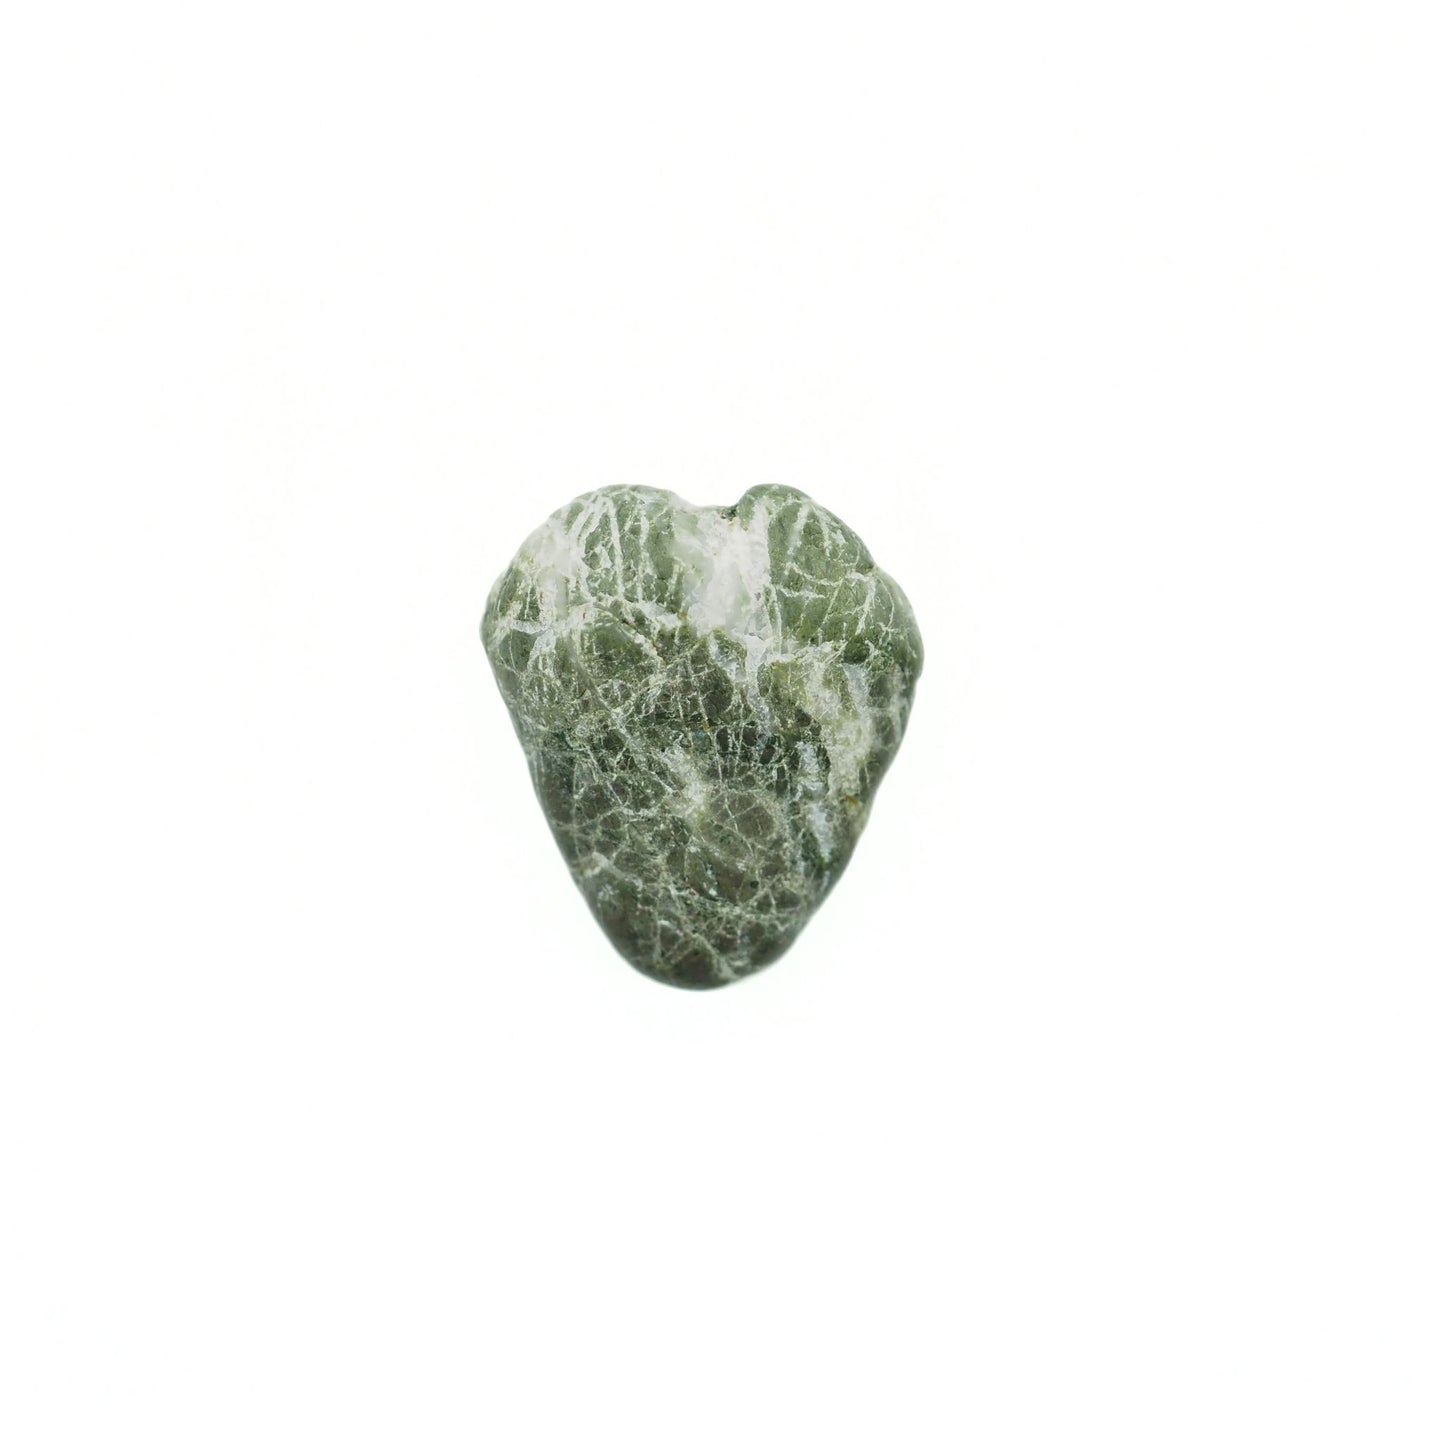 Heart shaped jade beach stone